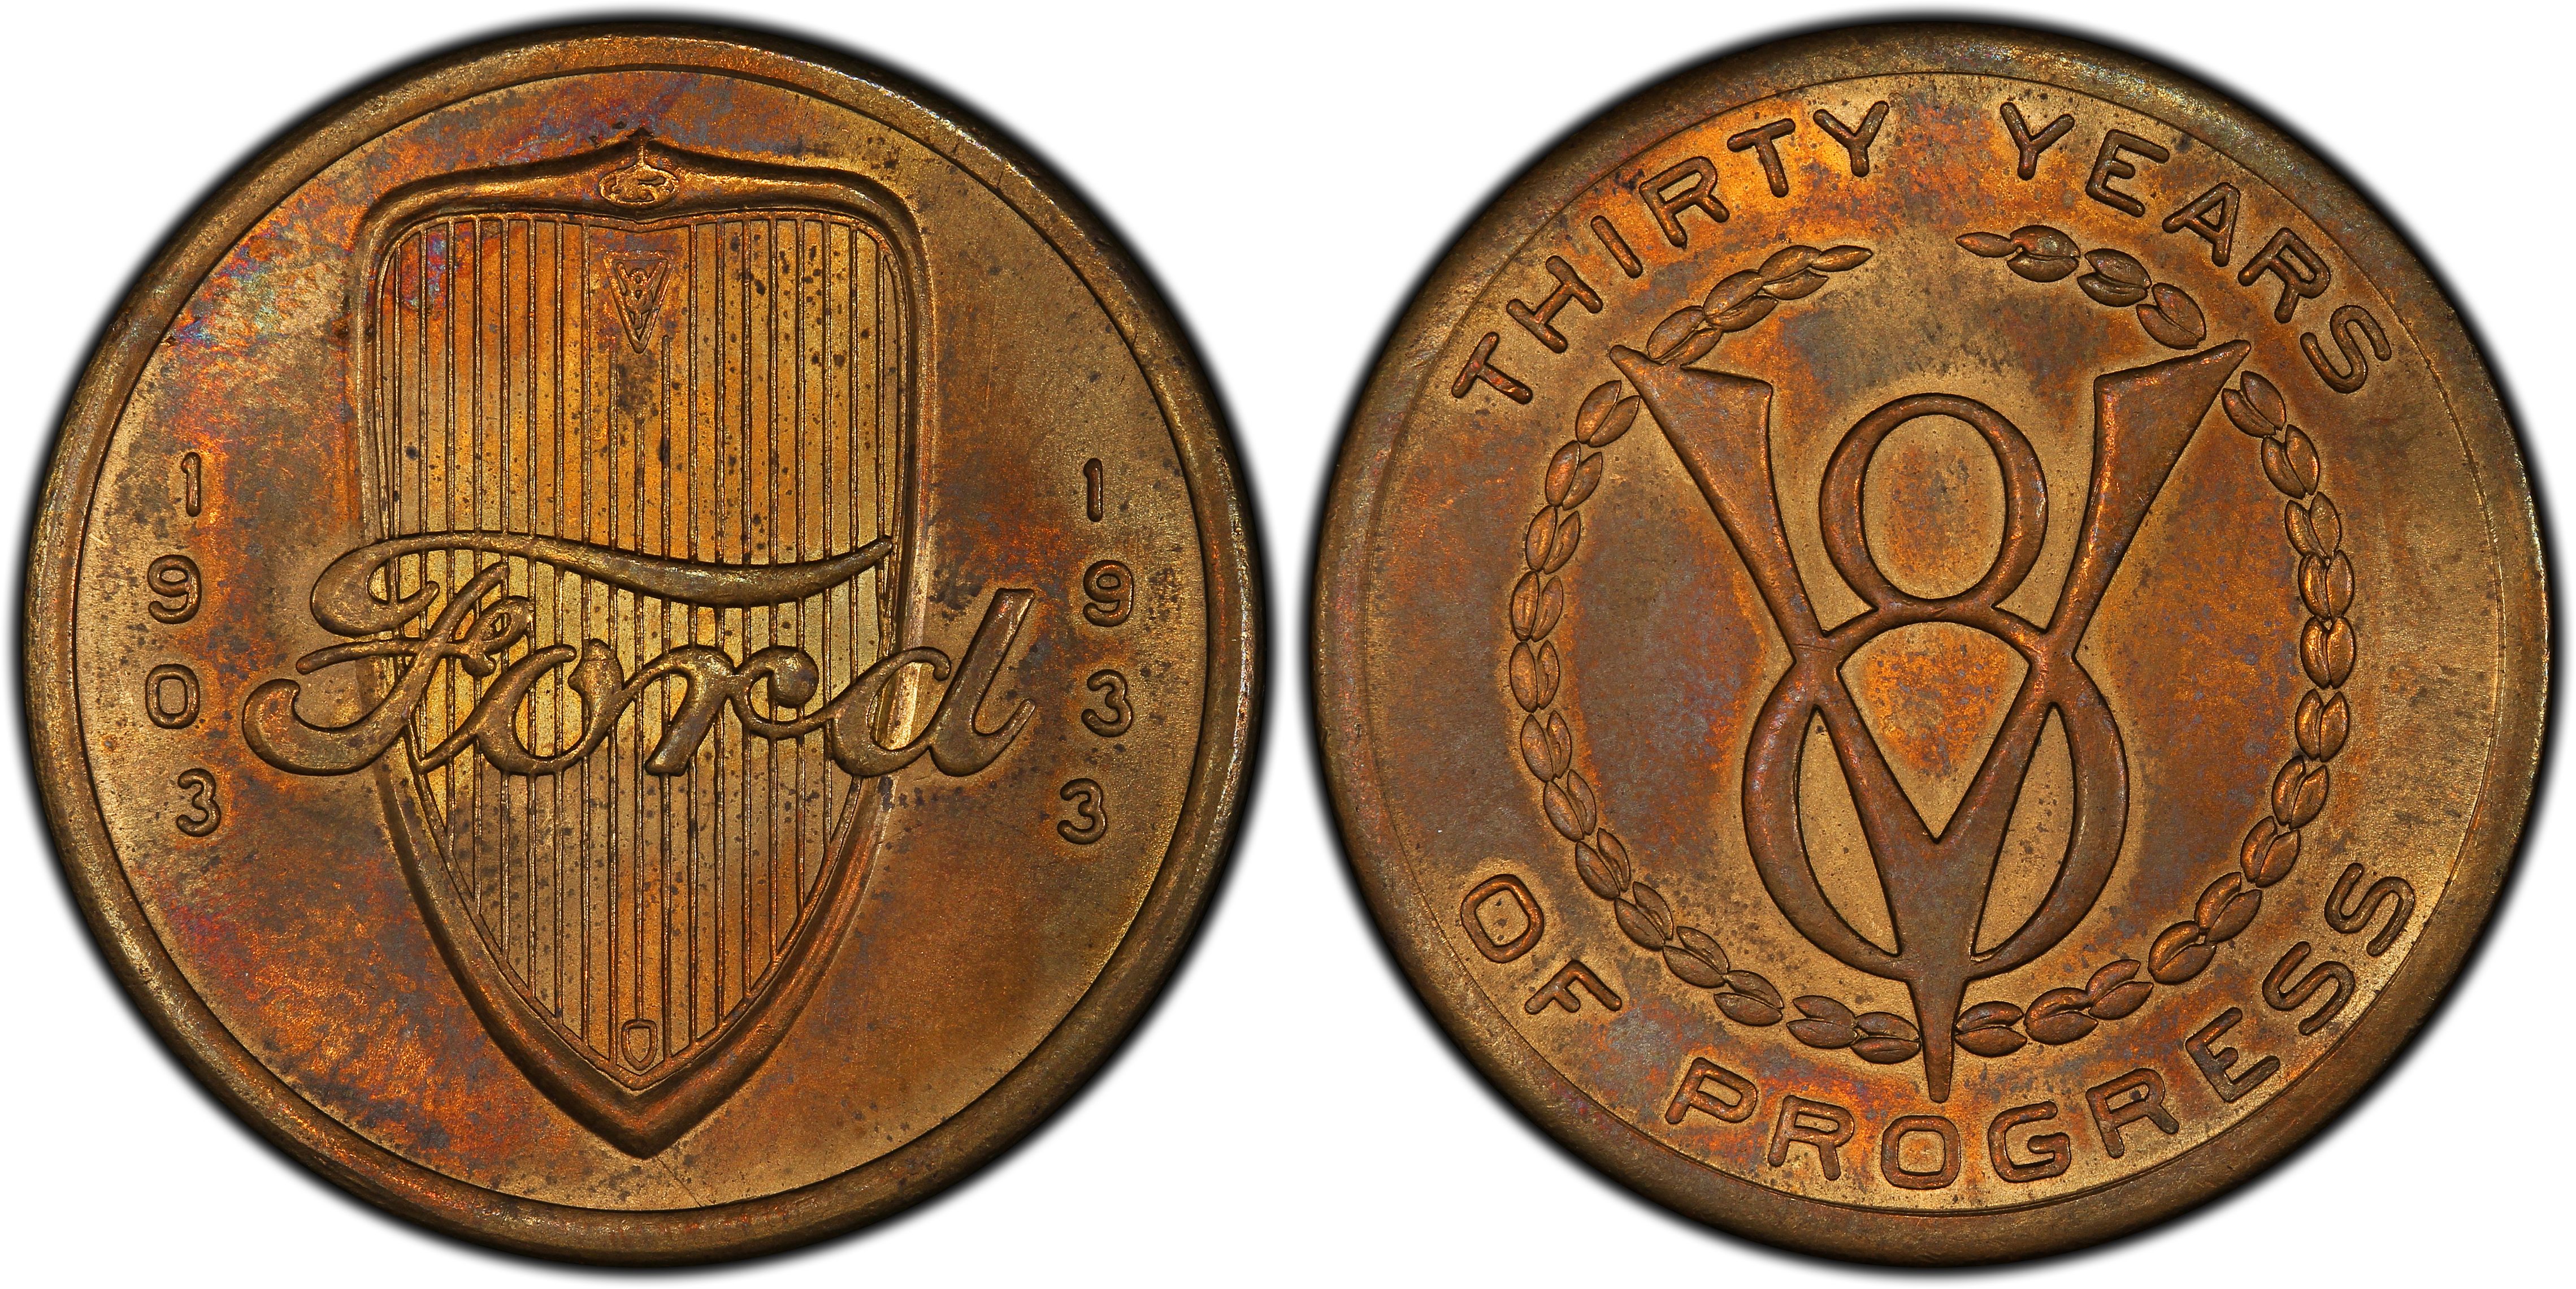 1933 Medal HK-465 Cent. of Progress Ford Dollar, RB (Regular Strike) So ...